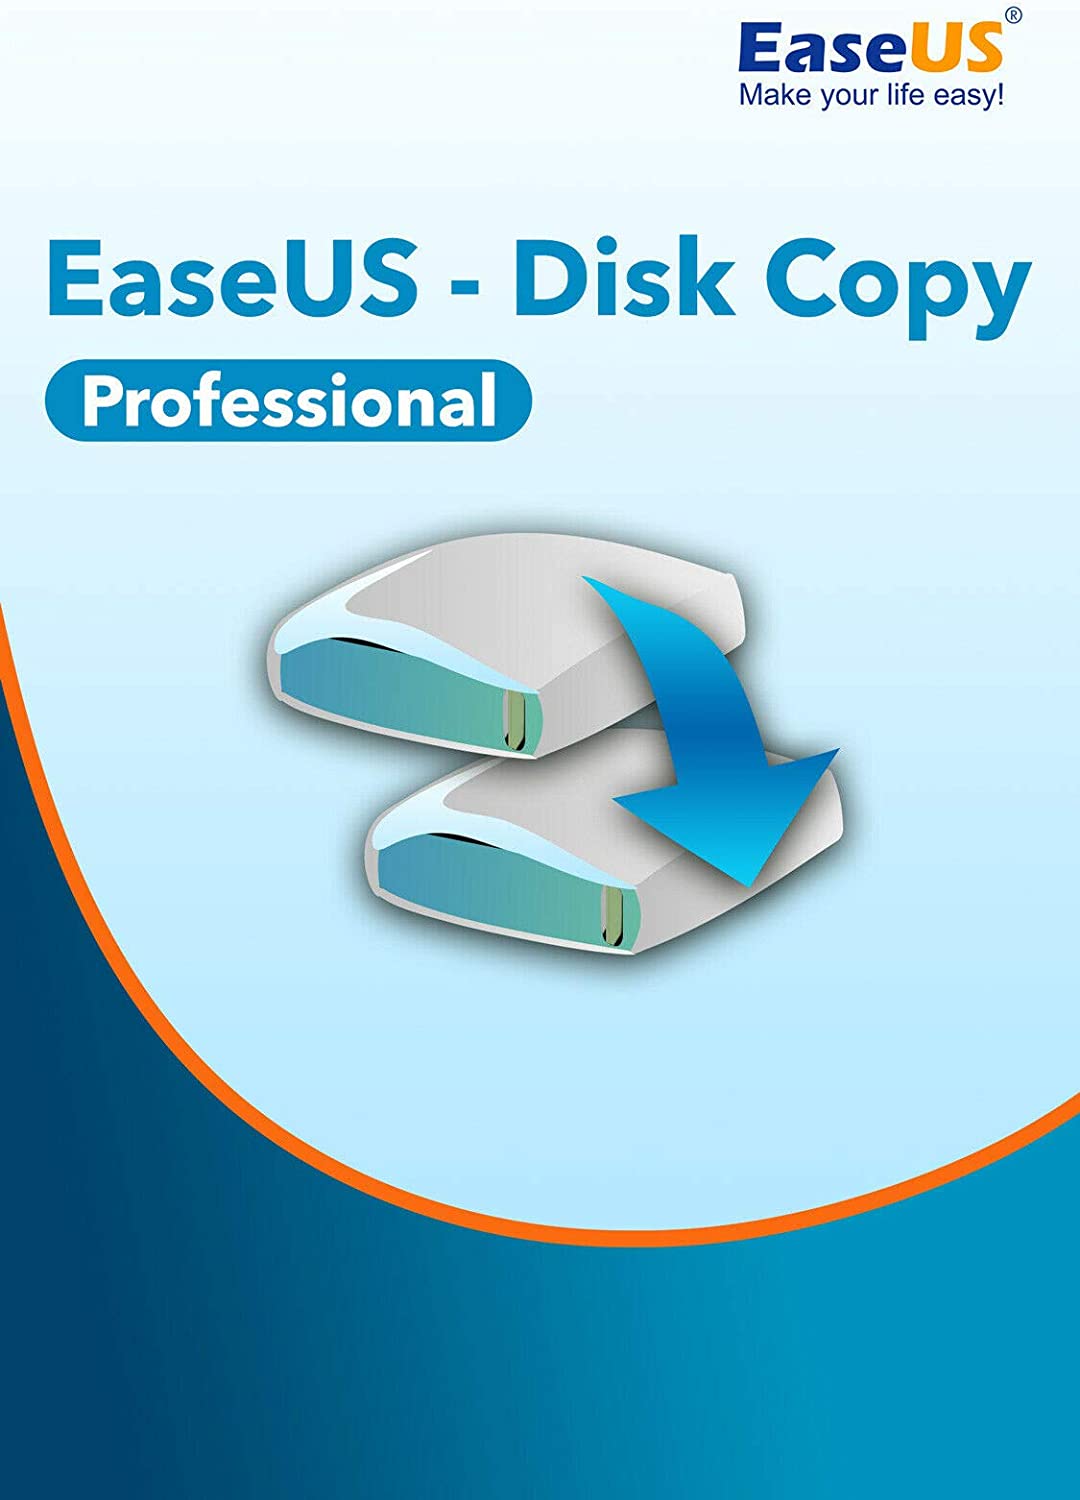 Easeus Disk Copy Crack Full Version